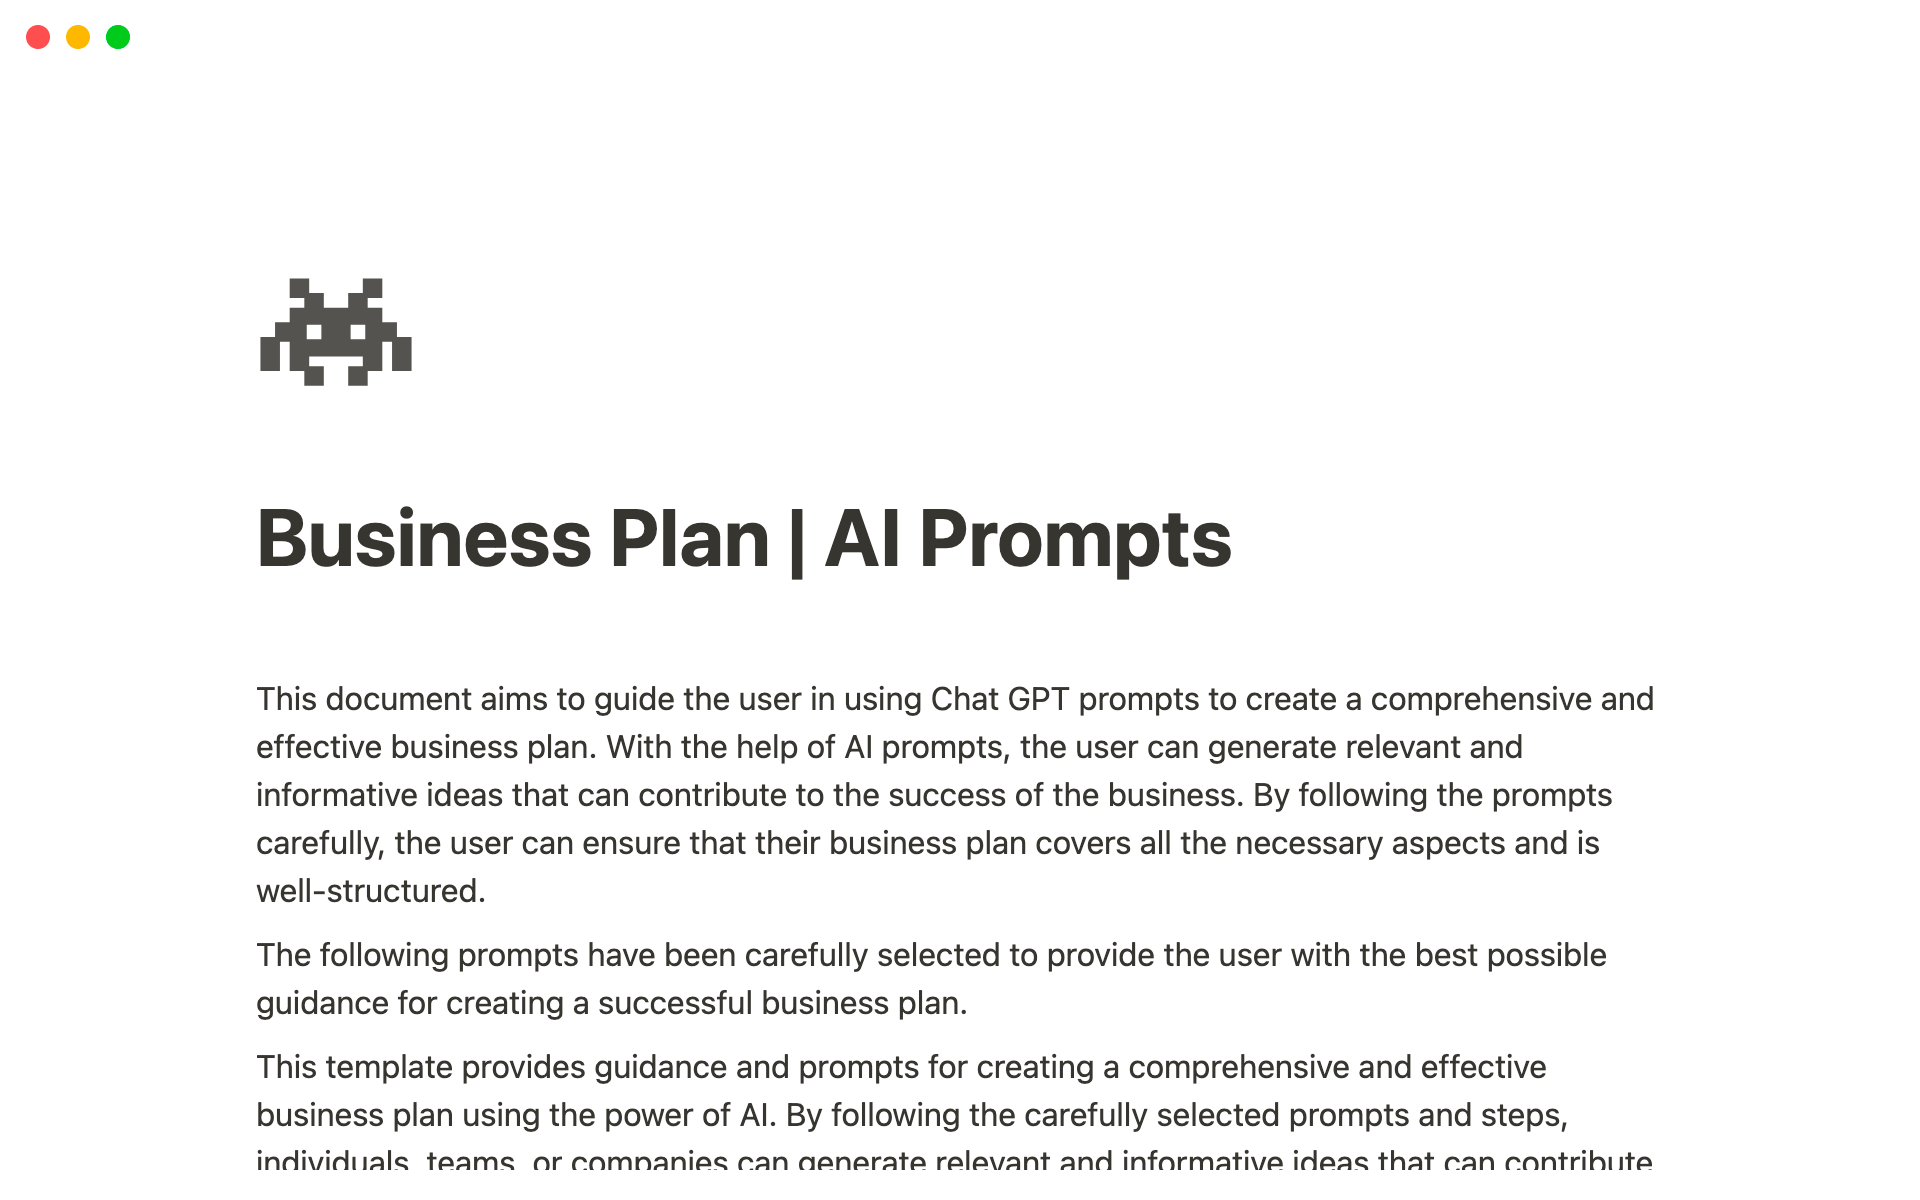 Uma prévia do modelo para Business Plan - AI Prompts